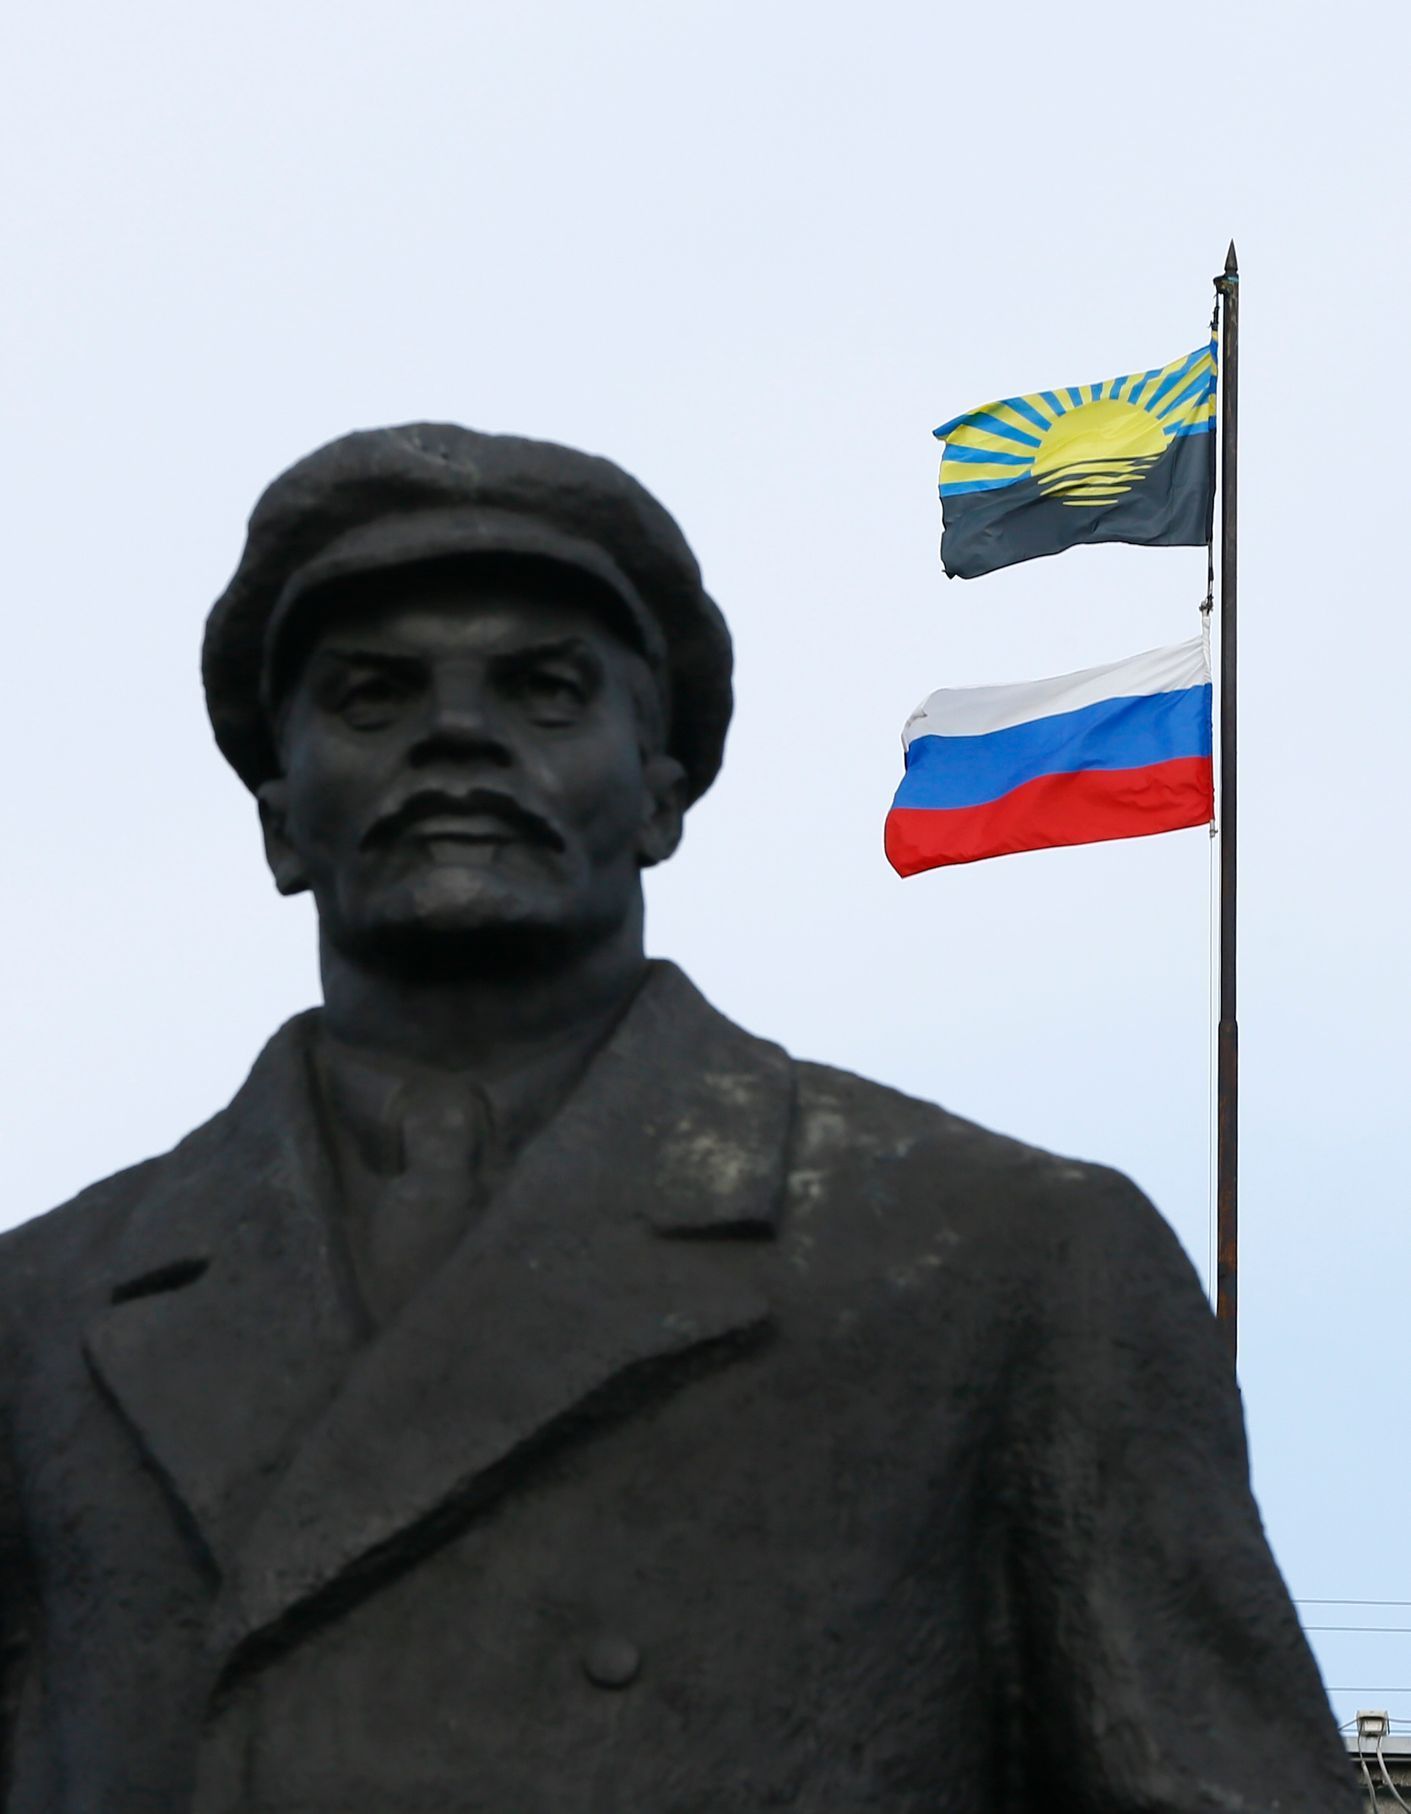 Ukrajina - Slavjansk - Lenin